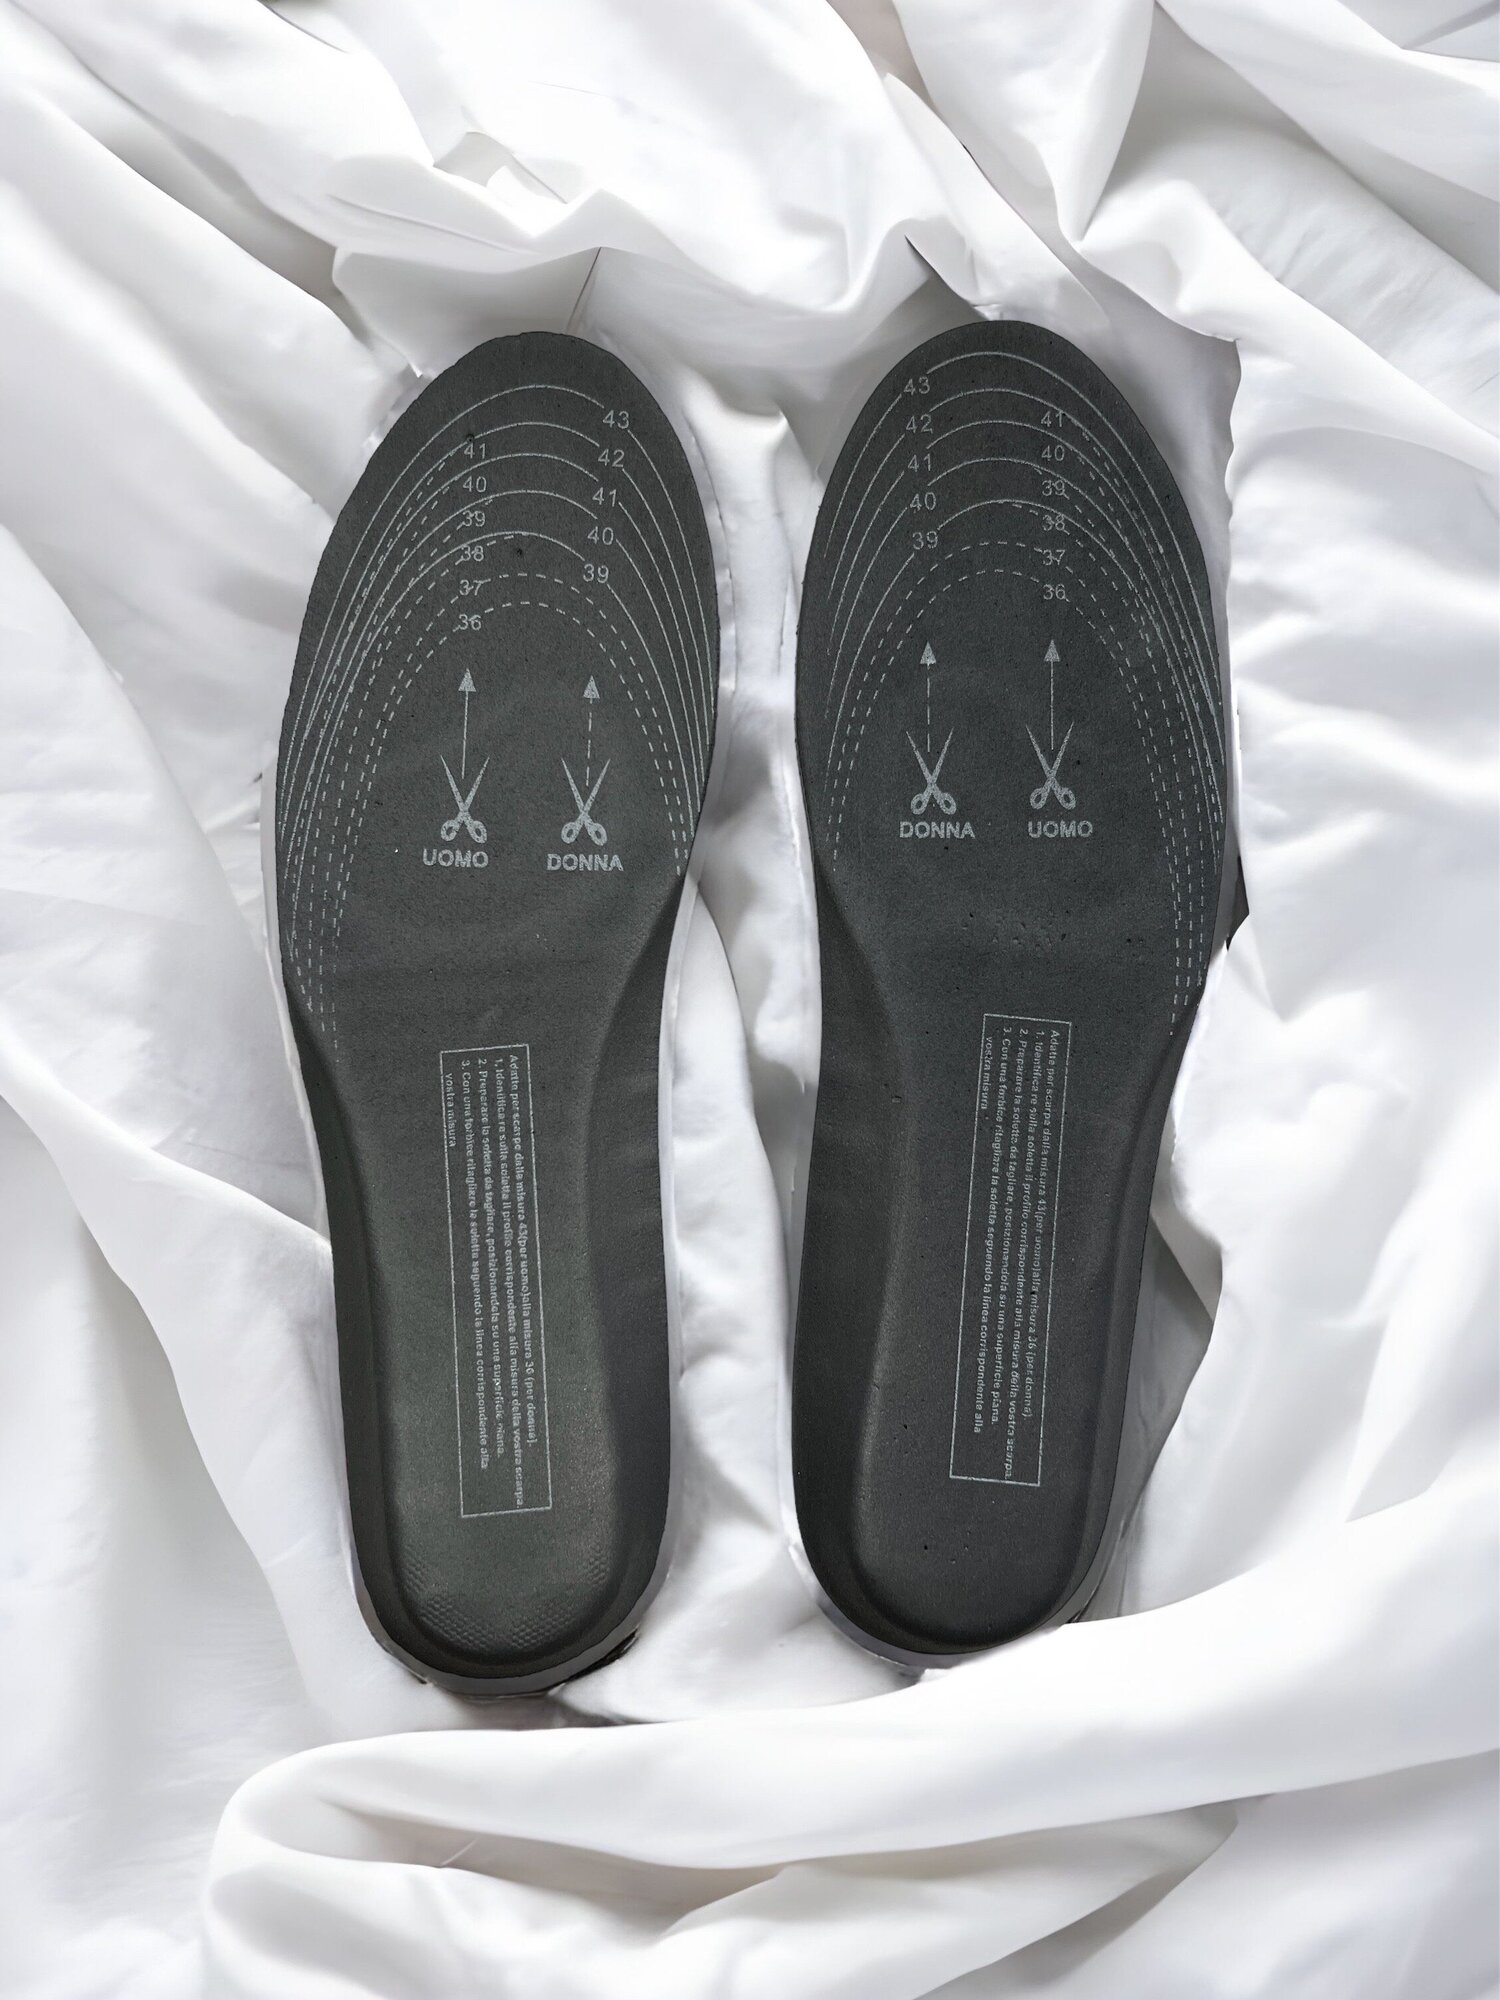 Cпортивные,ортопедичекие стельки в комплекте (2 пары) для обуви с эффектом памяти от 34 до 44 размера. - фотография № 7